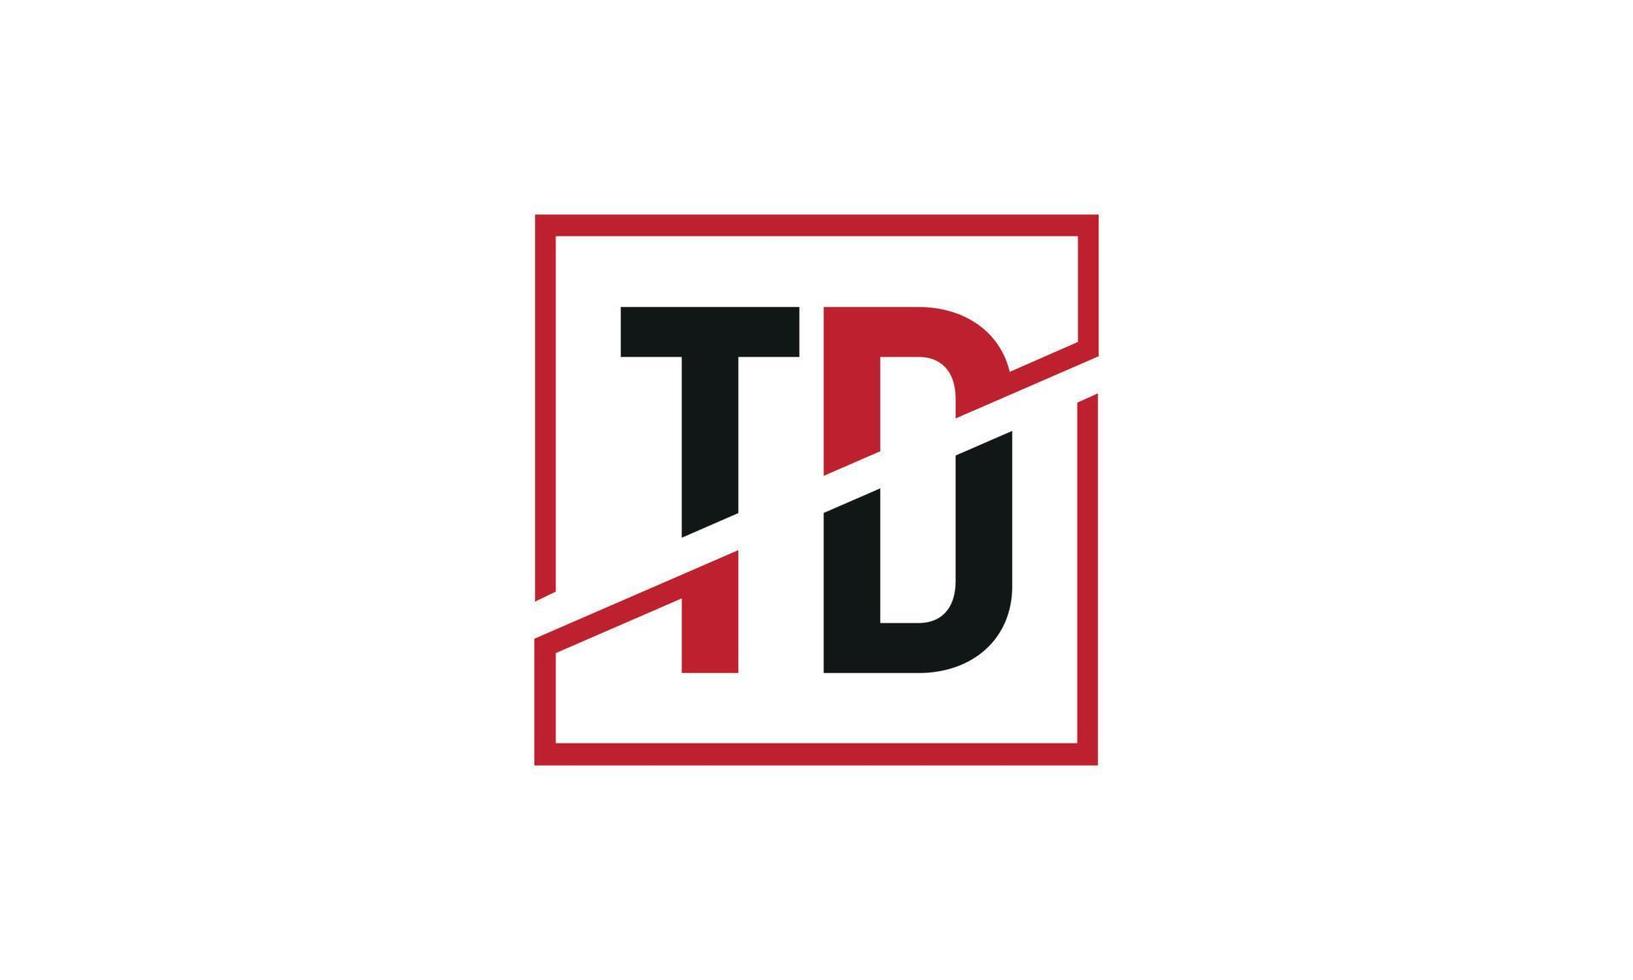 lettre td logo pro fichier vectoriel vecteur pro